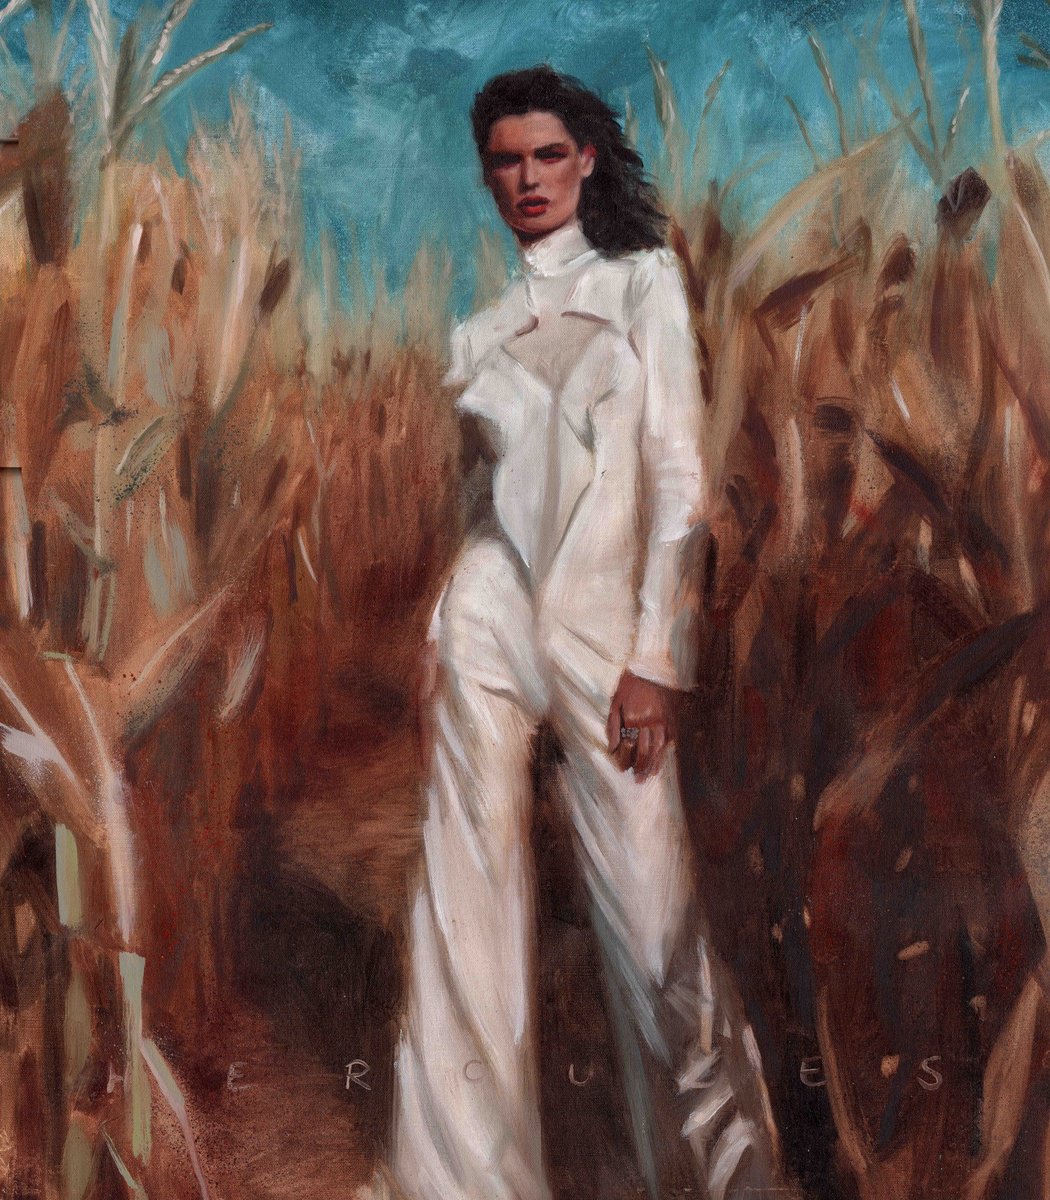 Im not lost Oil painting of brunette model wearing a white suit in the corn fields. by Renske Karlien Hercules